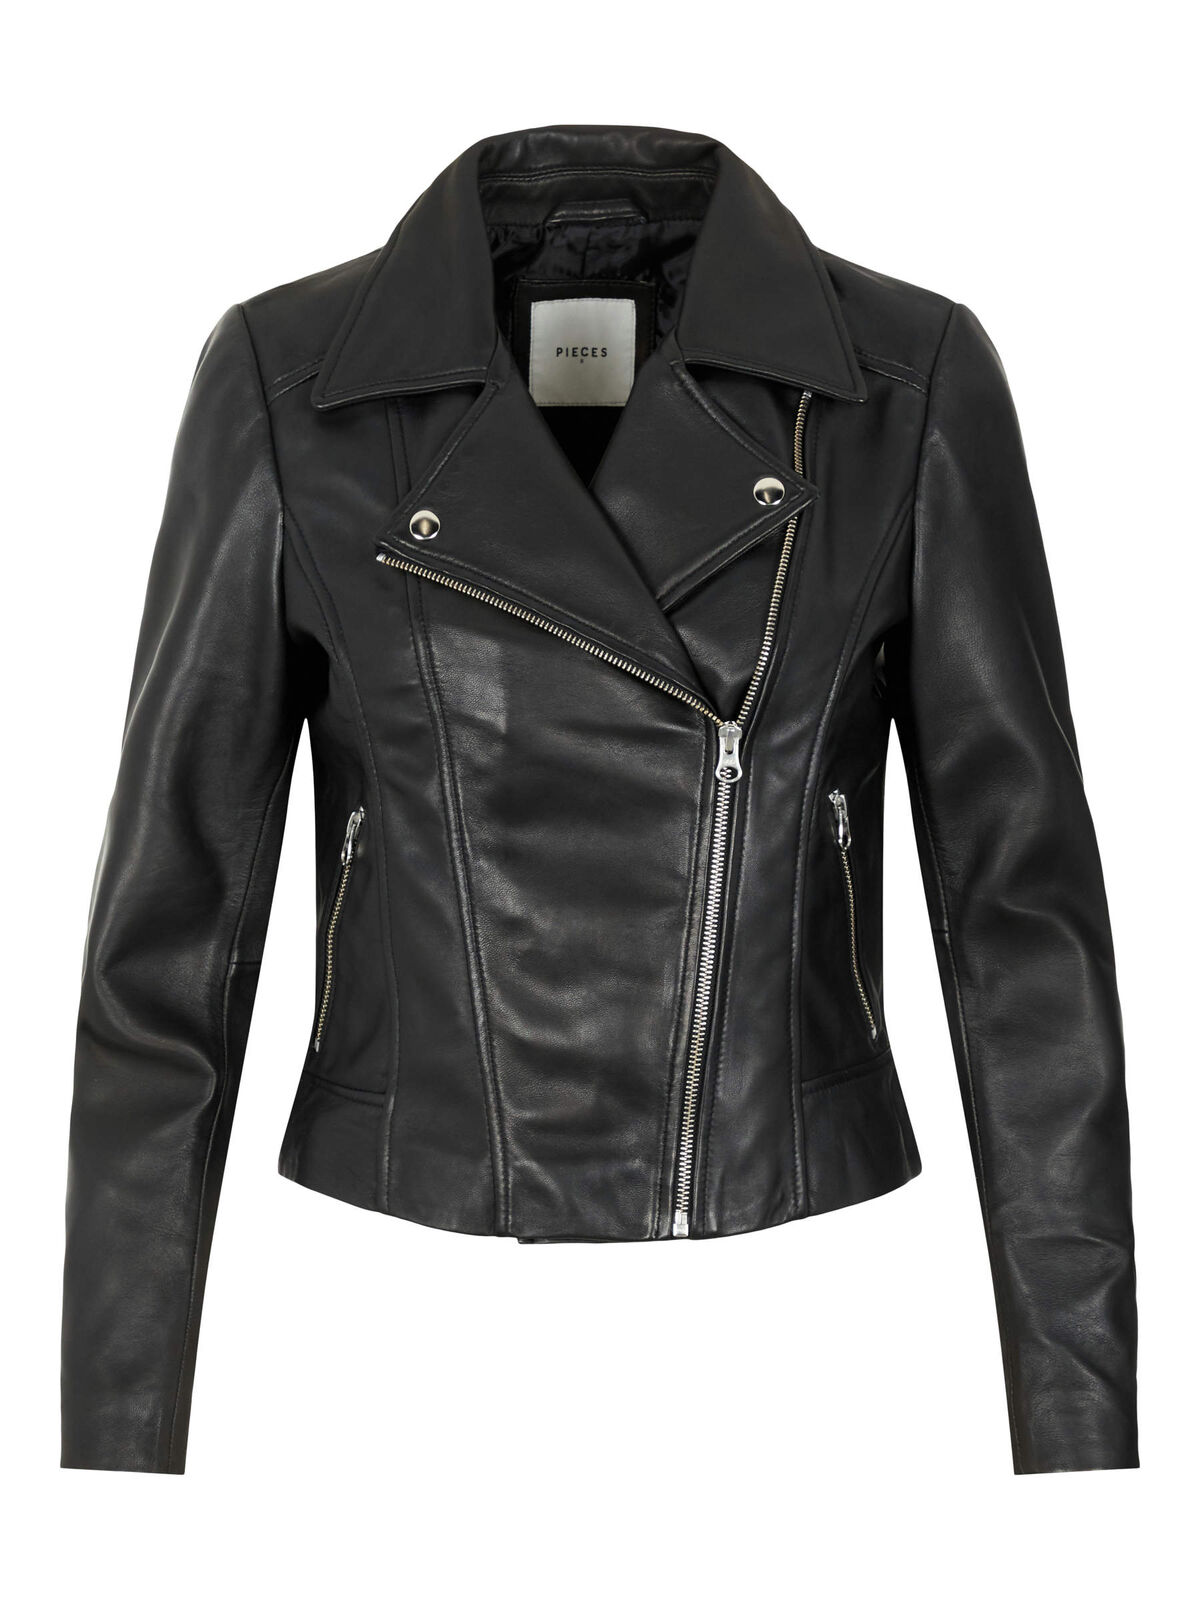 Pcsus leather jacket | Pieces